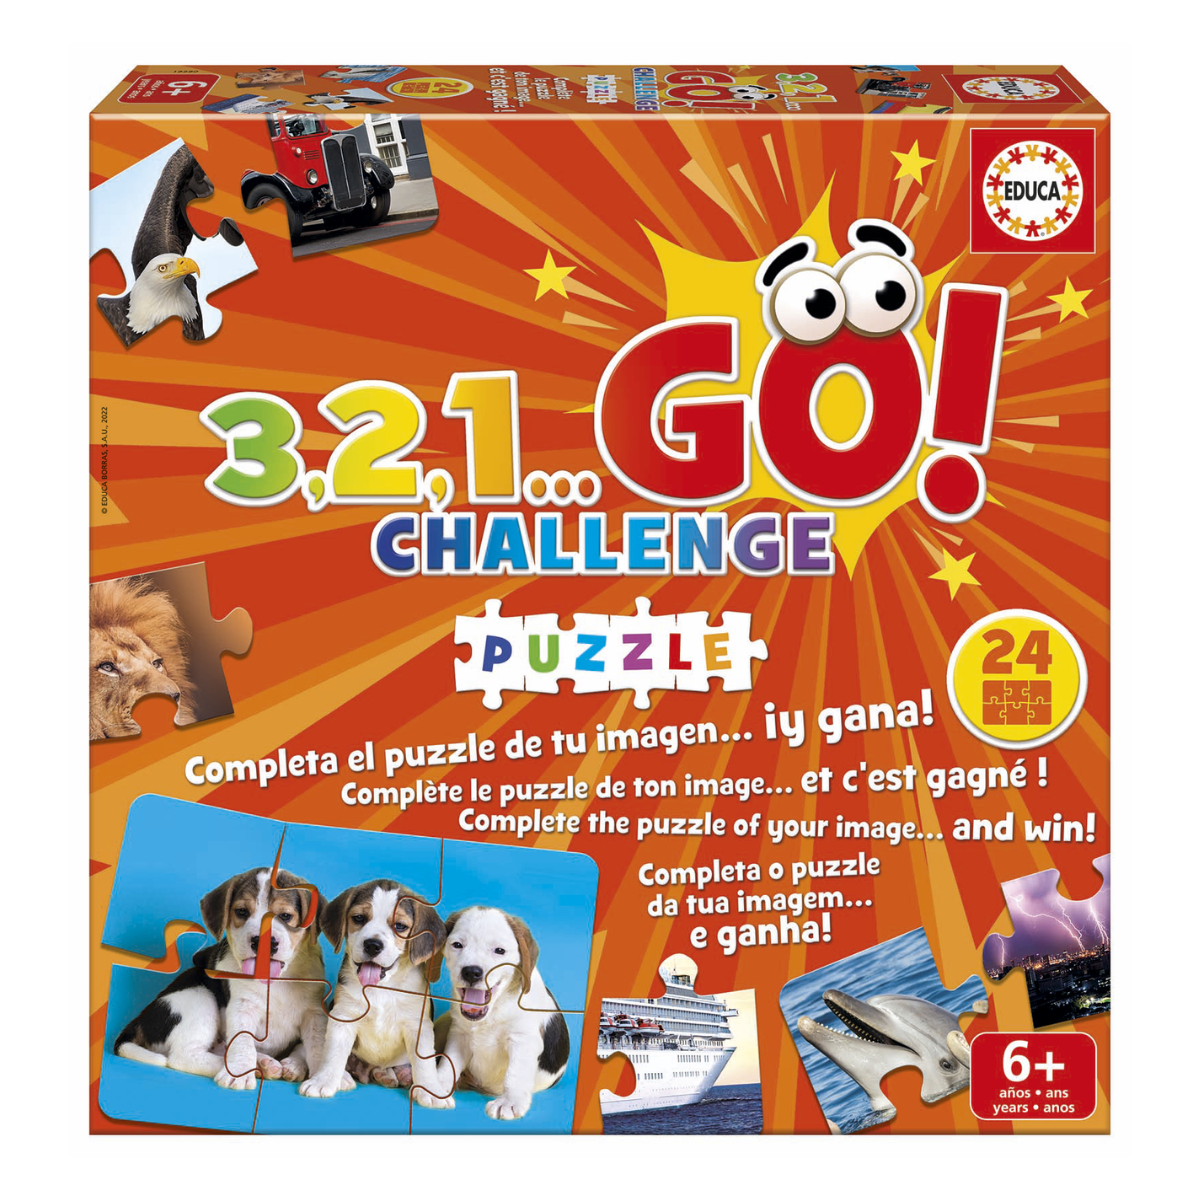 Go Challenge Puzzle